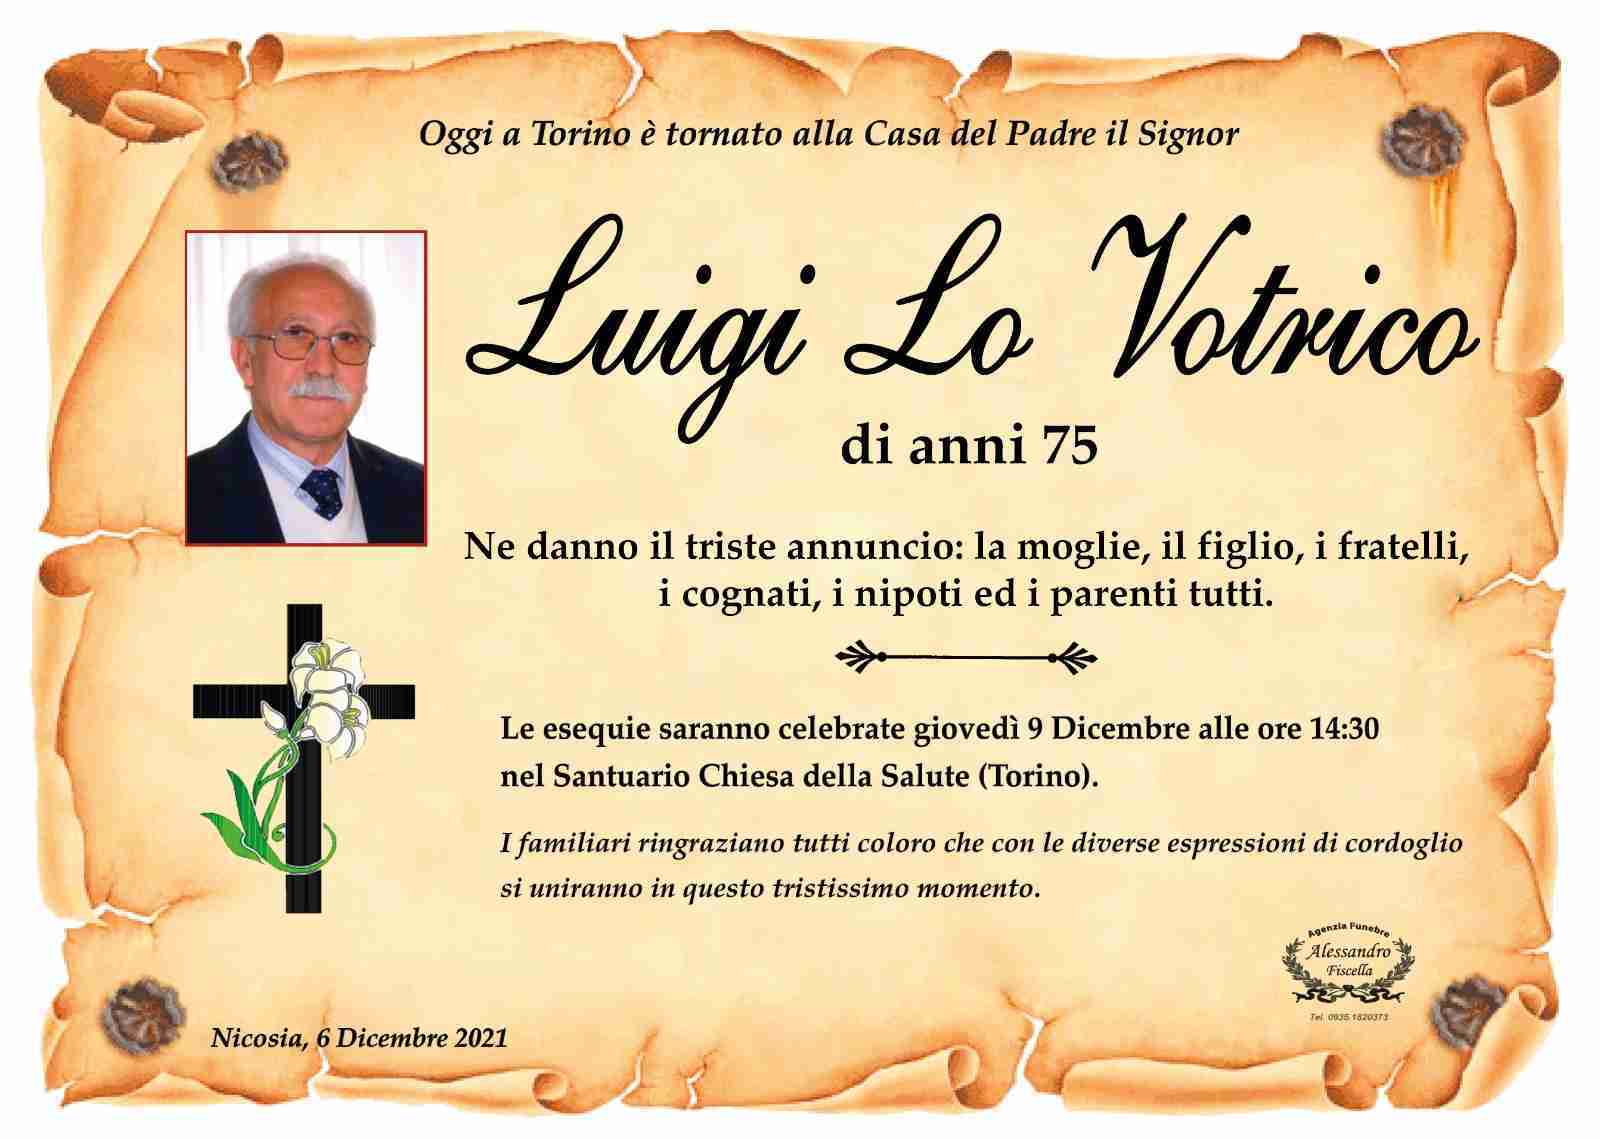 Luigi Lo Votrico